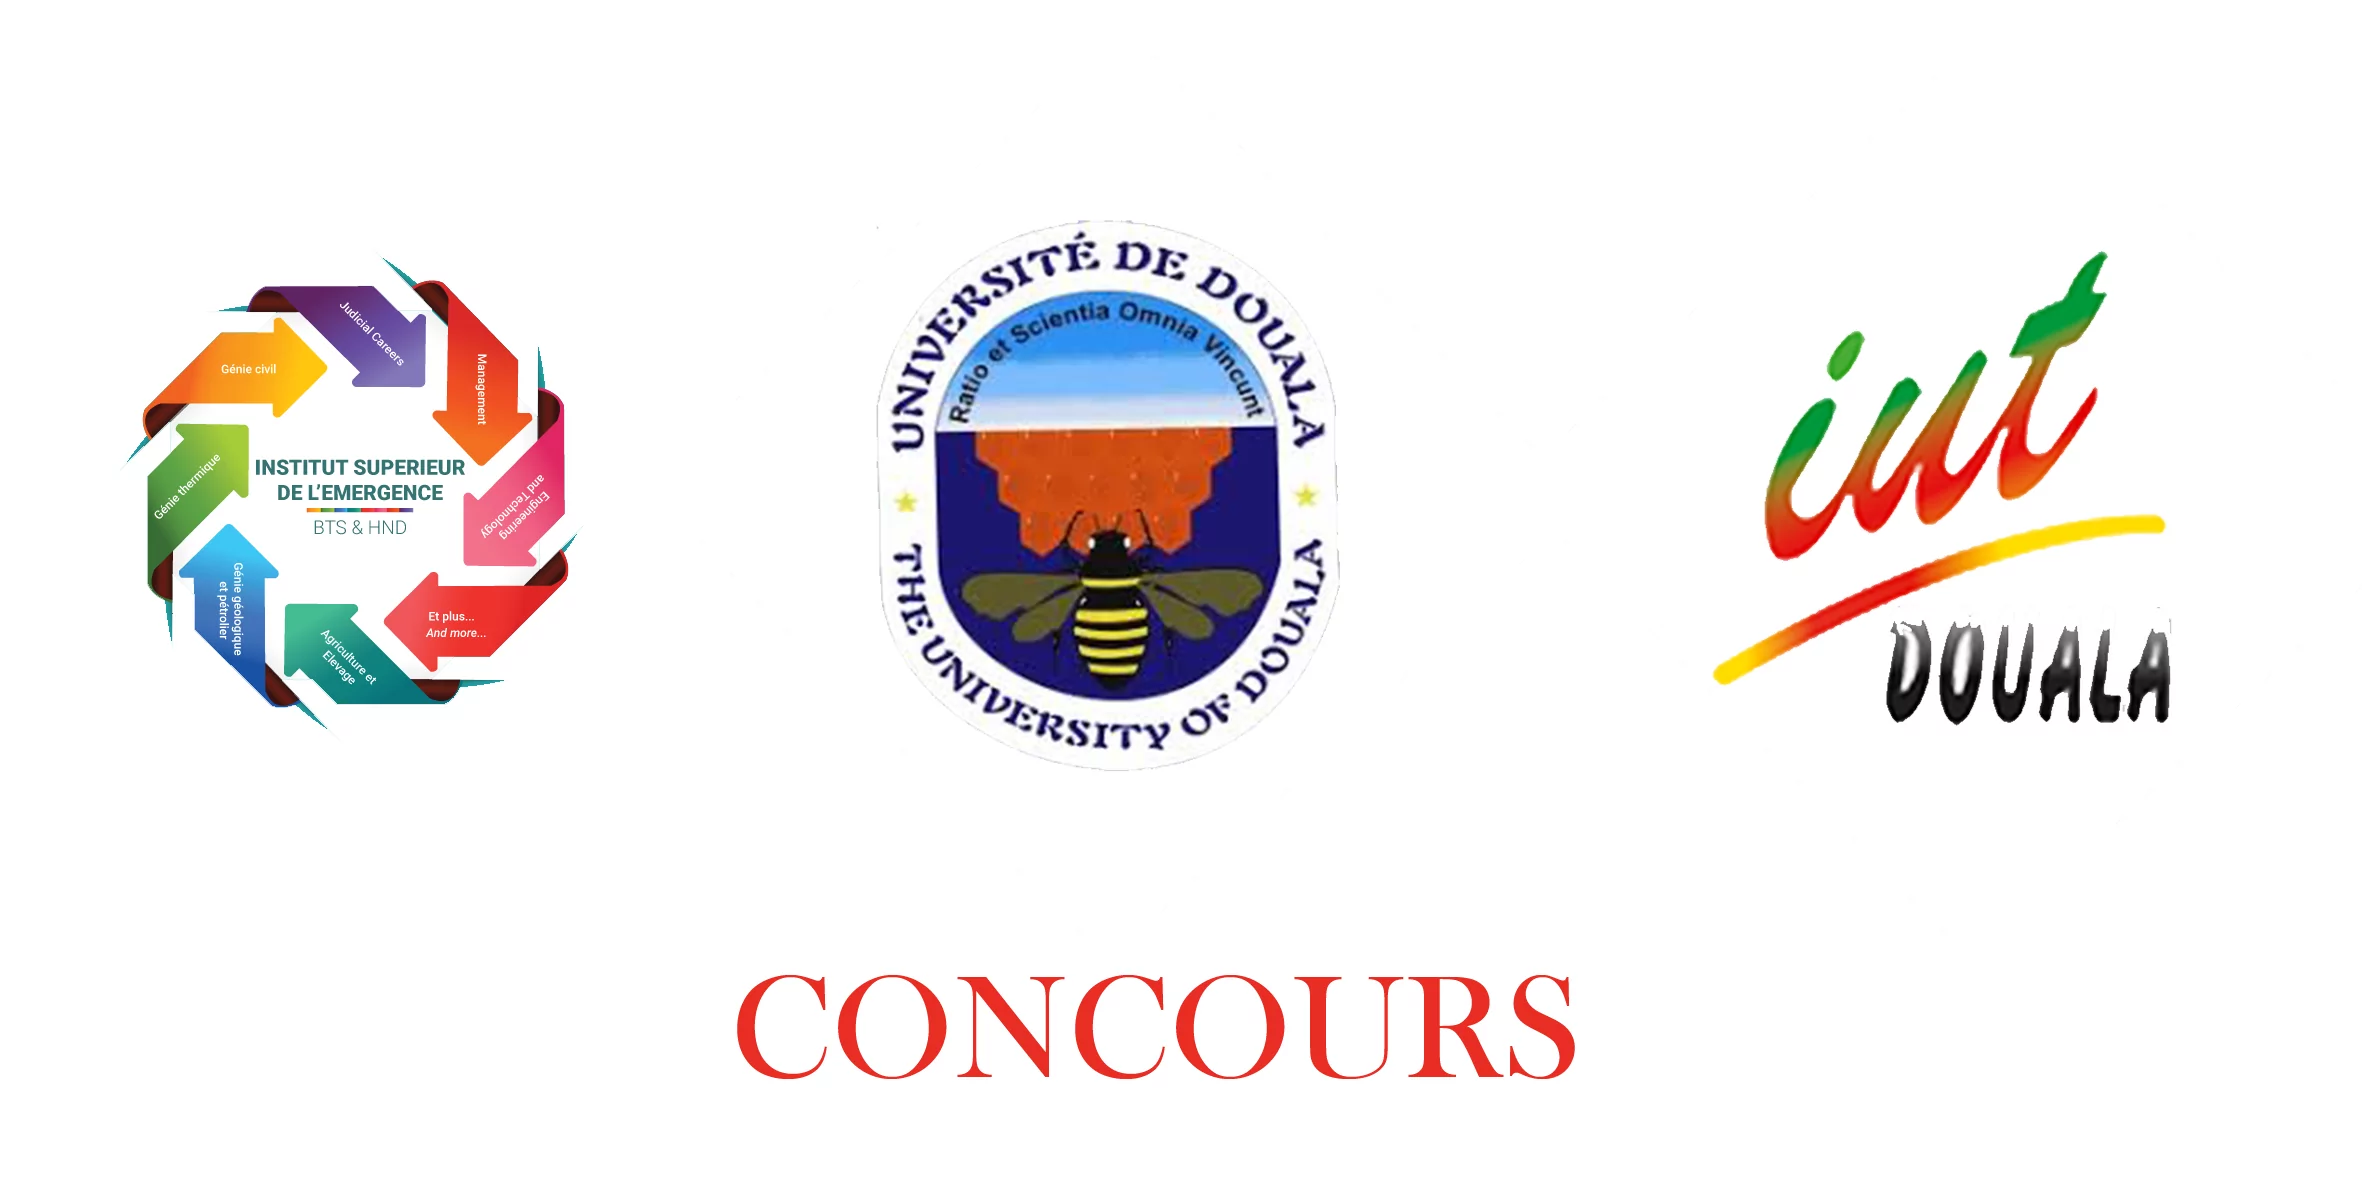 Concours d’entrée en première année de la Division de la Formation Initiale à l’Institut Universitaire de Technologie (IUT) de l’Université de Douala et à l’Institut Supérieur de l’Emergence (ISE) de Yaoundé, au titre de l’année académique 2022/2023